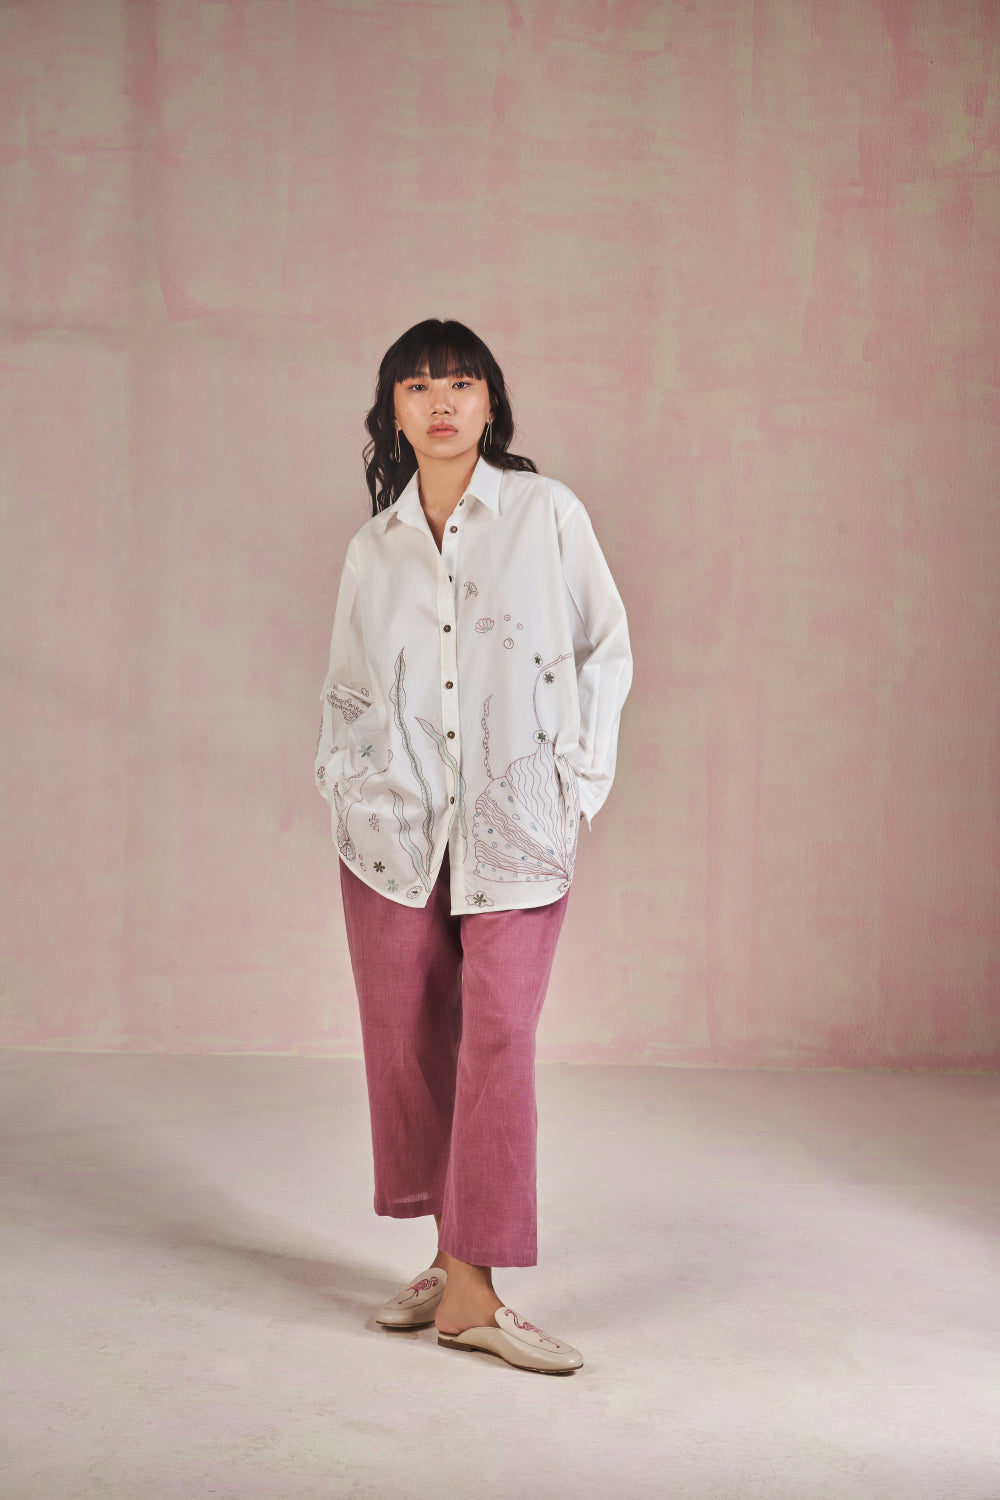 The Ocean classic organic cotton shirt Fashion SUI 